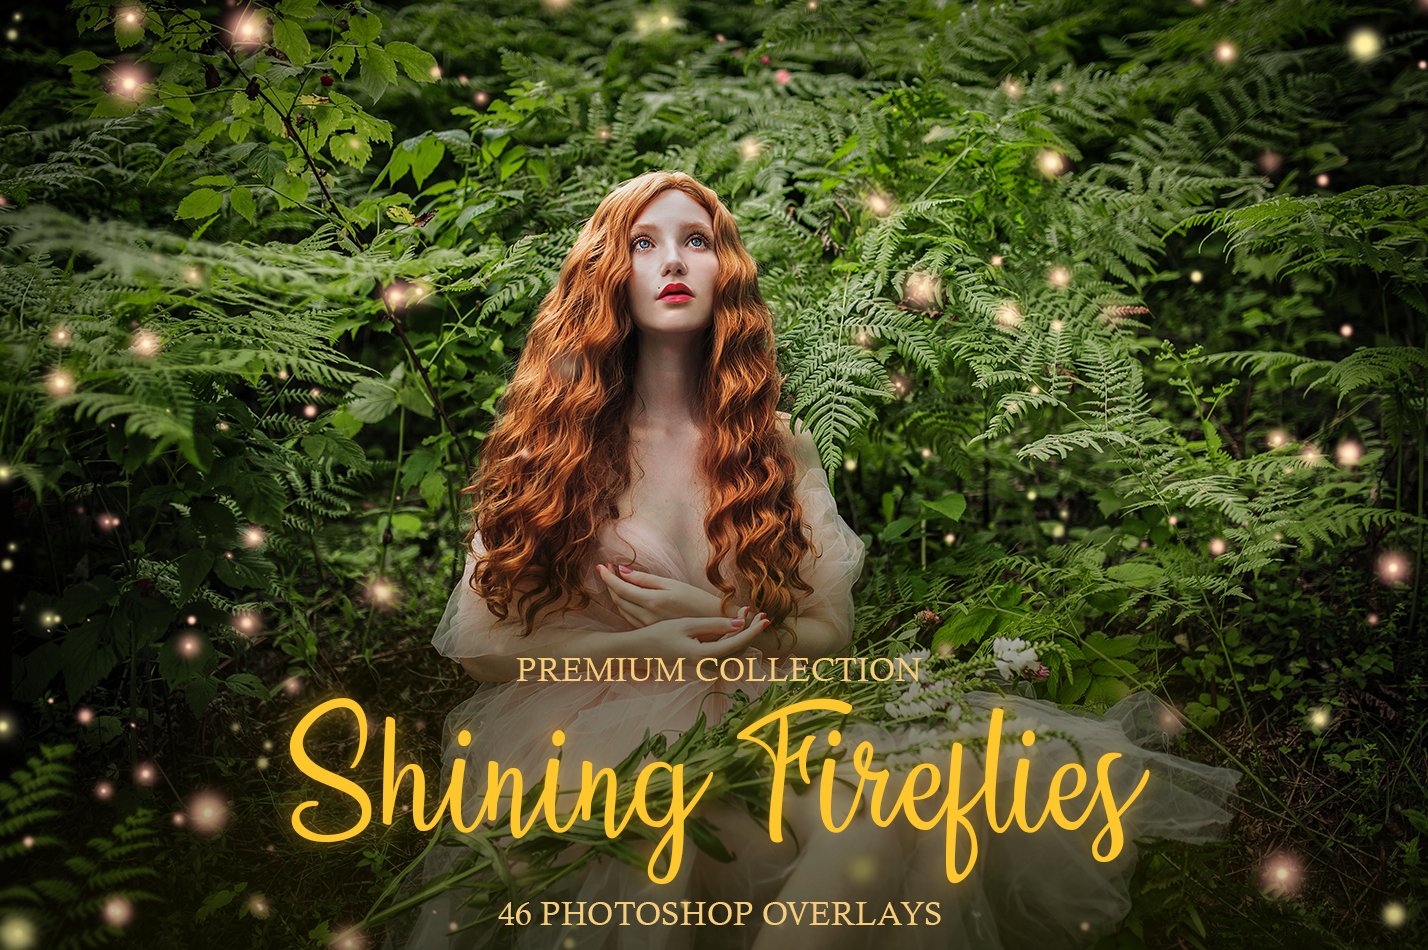 Shining Fireflies Photoshop Overlayscover image.